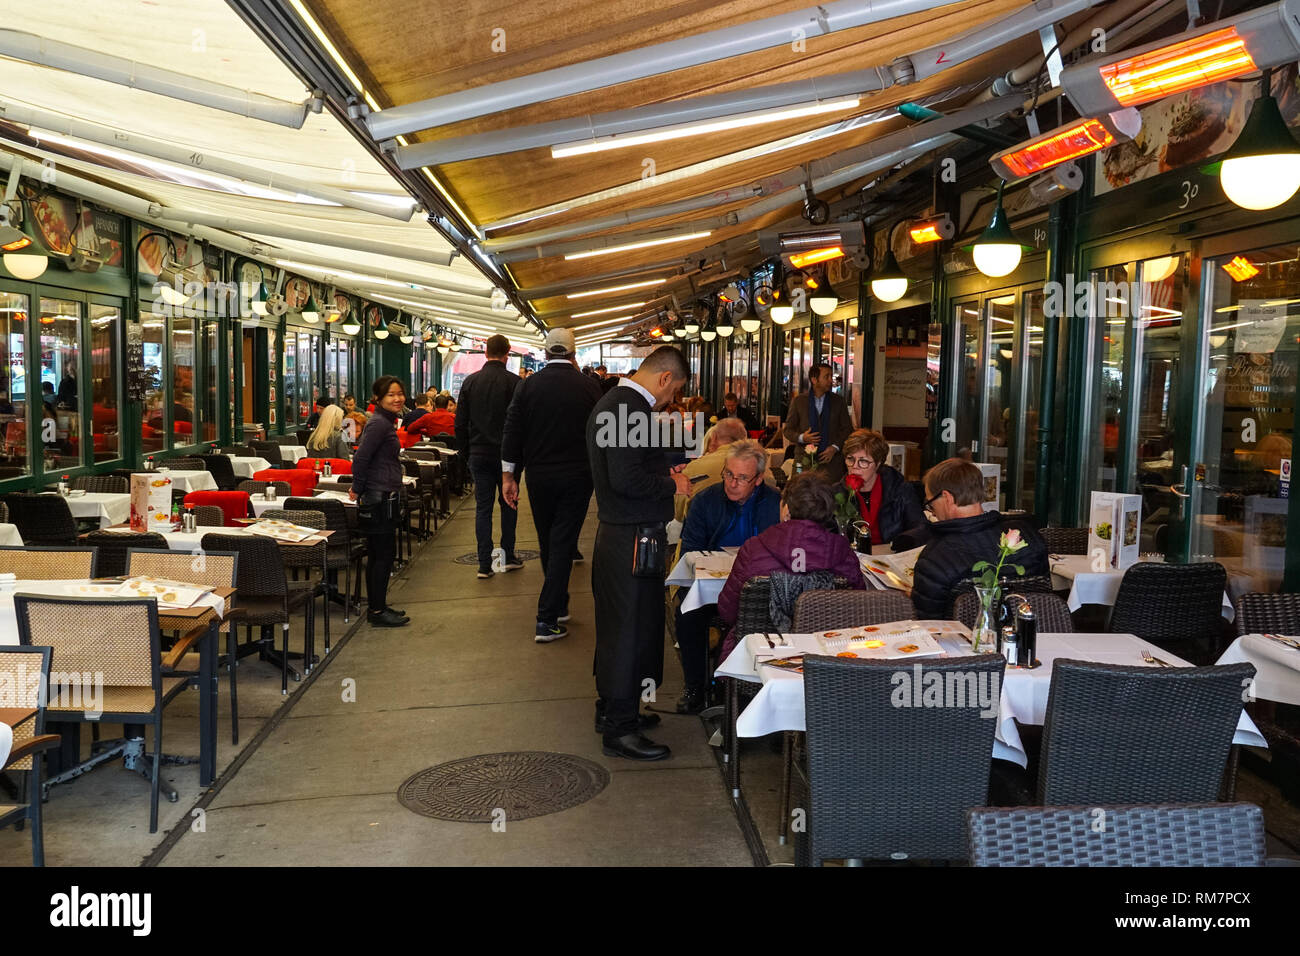 Restaurants at Naschmarkt market in Vienna, Austria Stock Photo